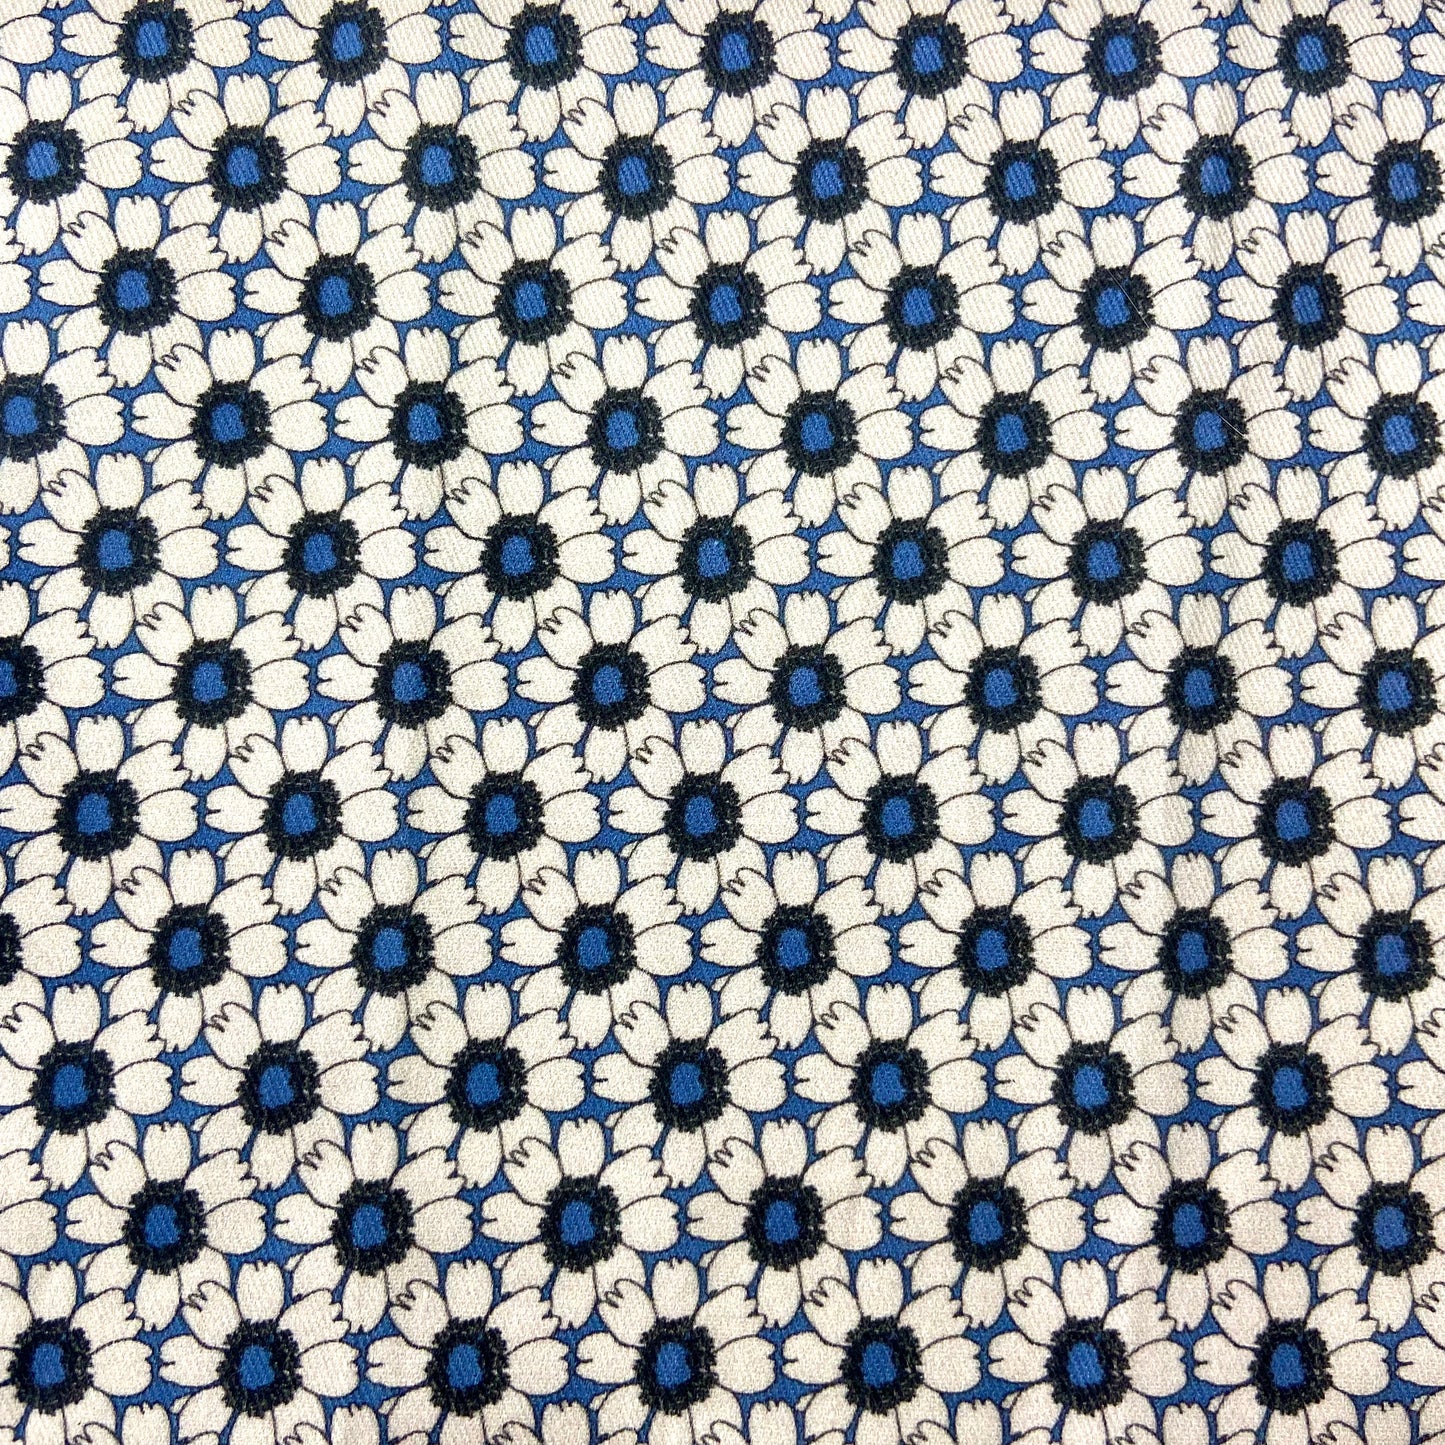 Sergé de coton imprimé à motif fleuri fleurs blanches écru sur fond bleu asters marguerites dahlias bleu roi romantique régulier élégant 